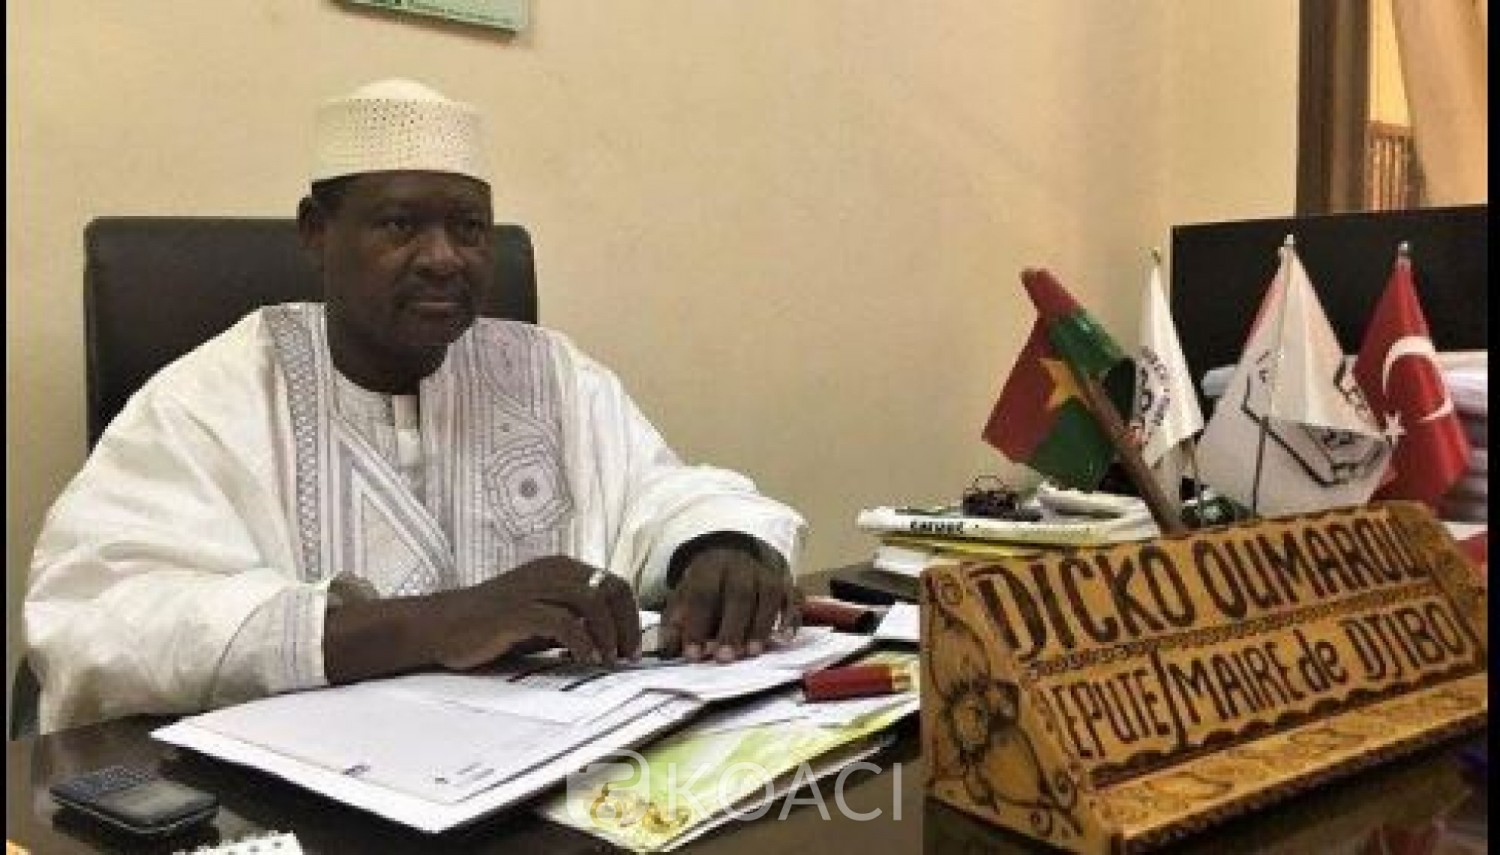 Burkina Faso: Le député maire de Djibo et trois autres personnes tués dans une attaque